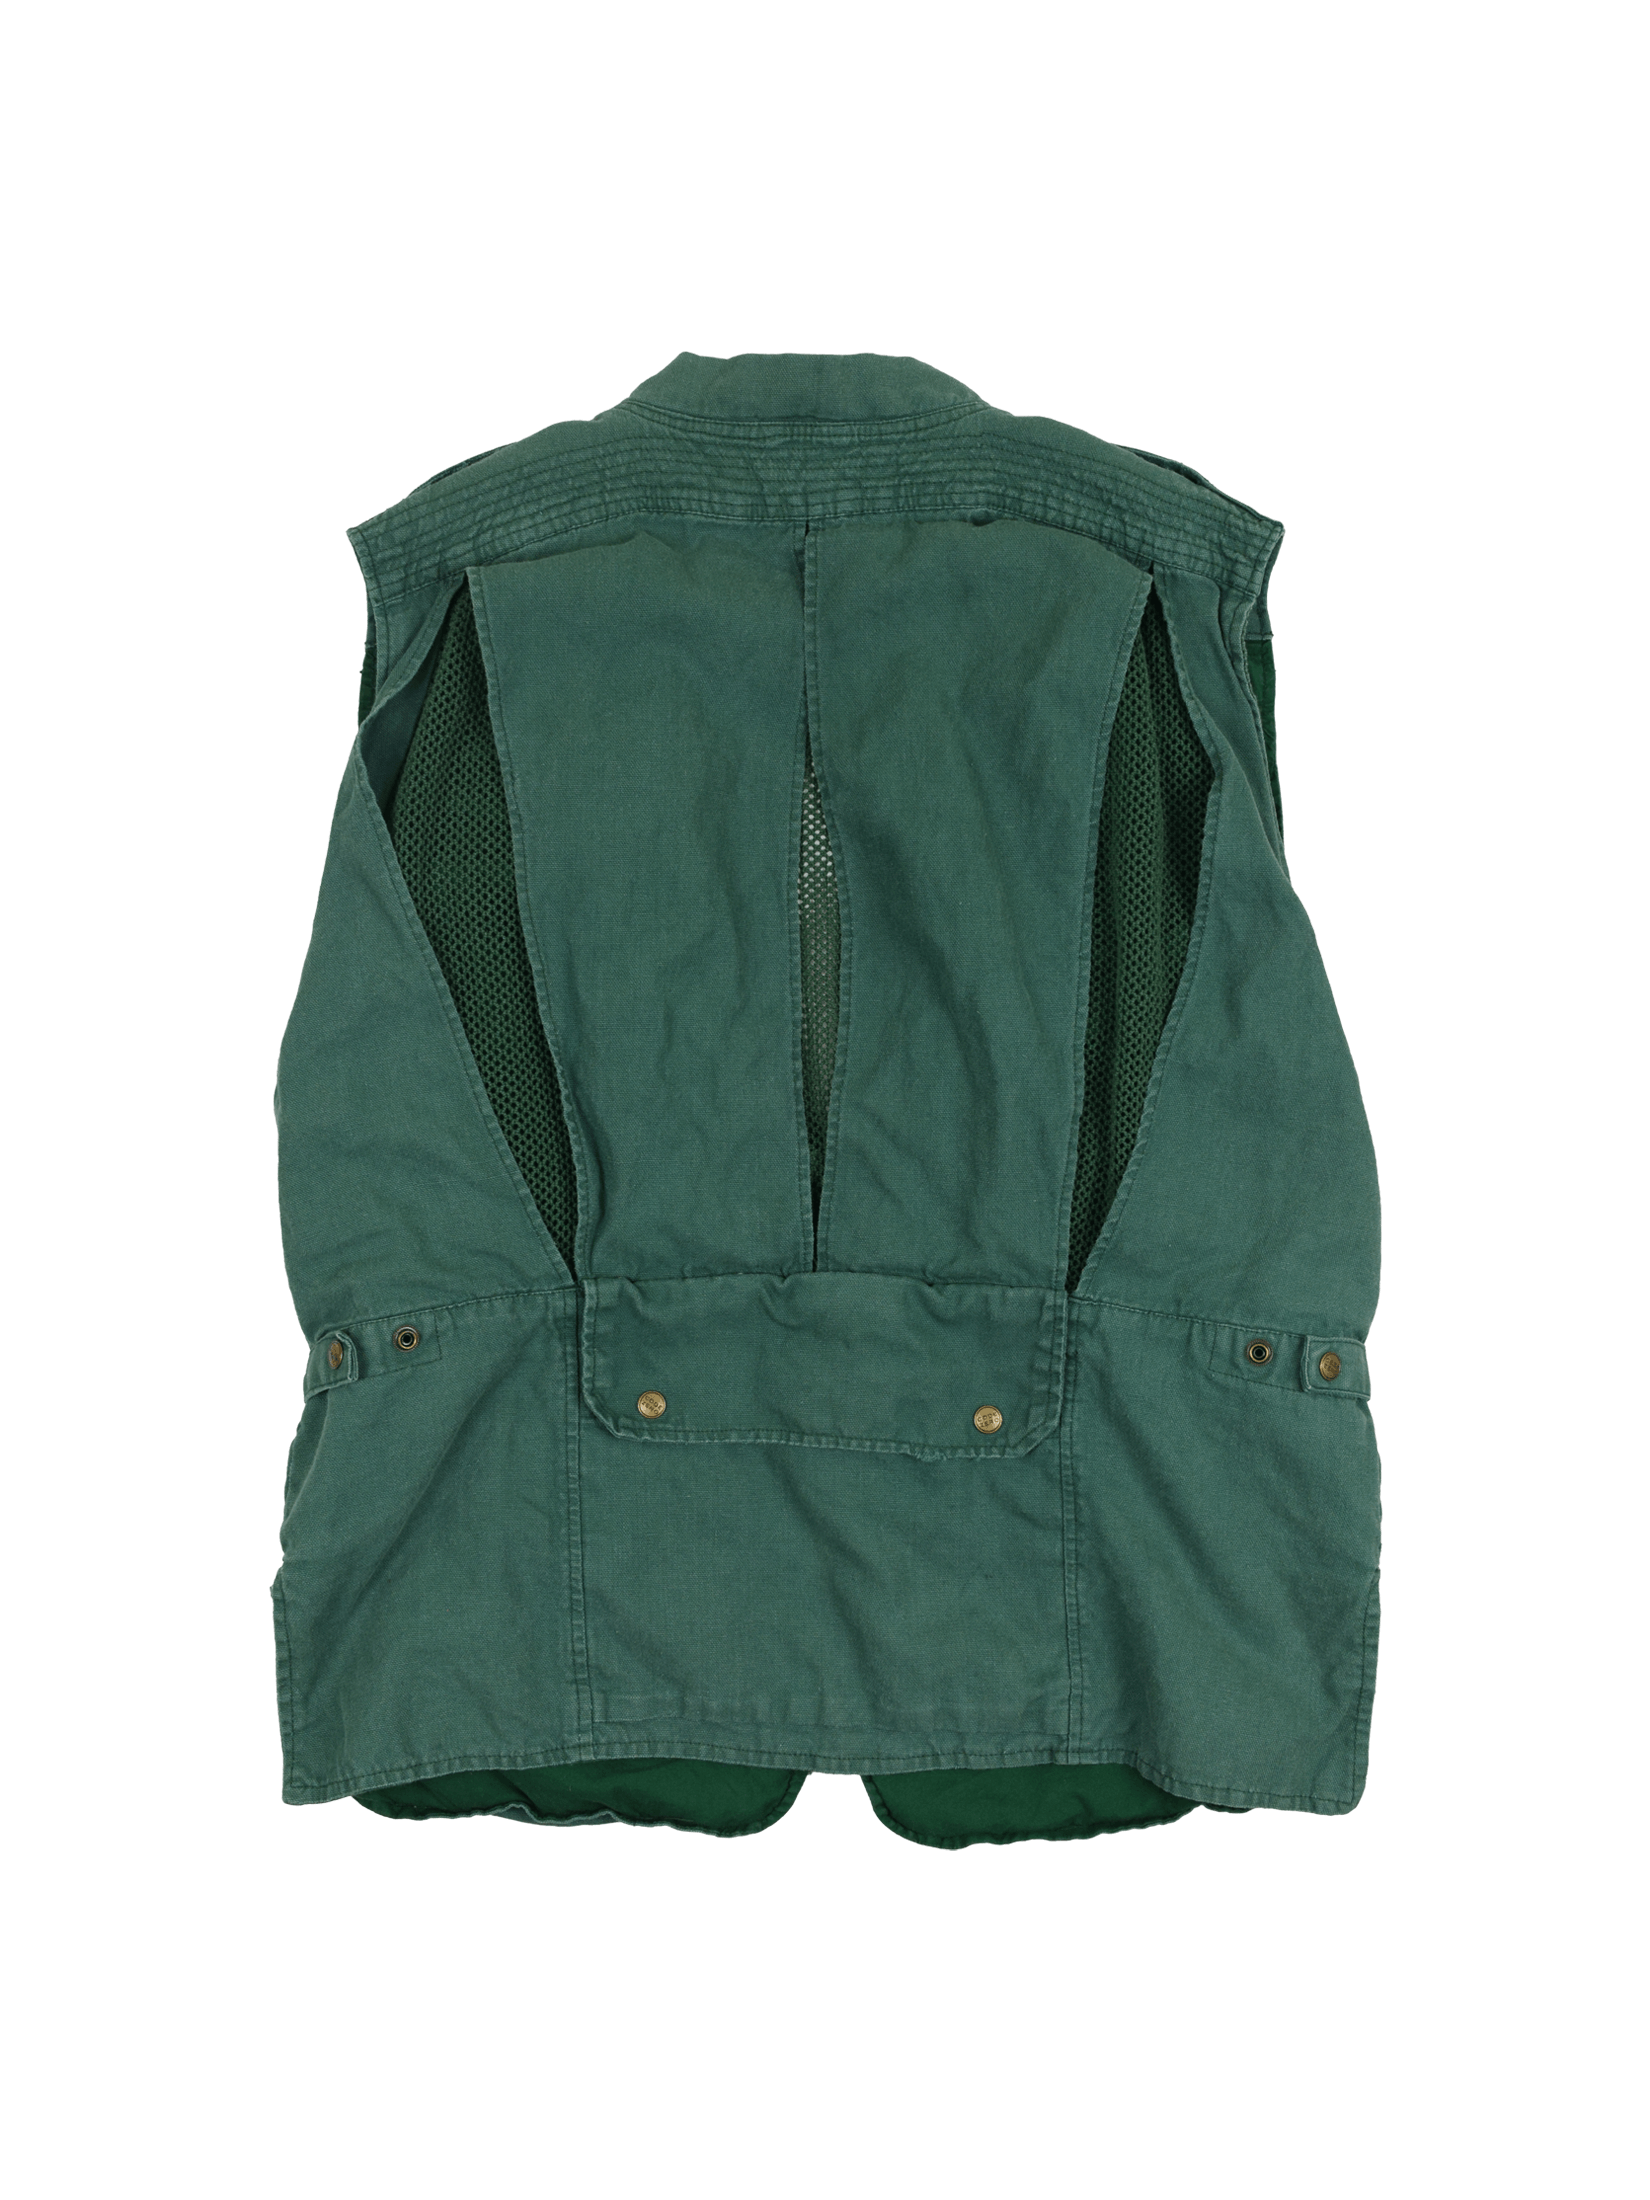 Vintage 1990s Code Zero Tactical Fishing Vest Size US XL / EU 56 / 4 - 3 Thumbnail